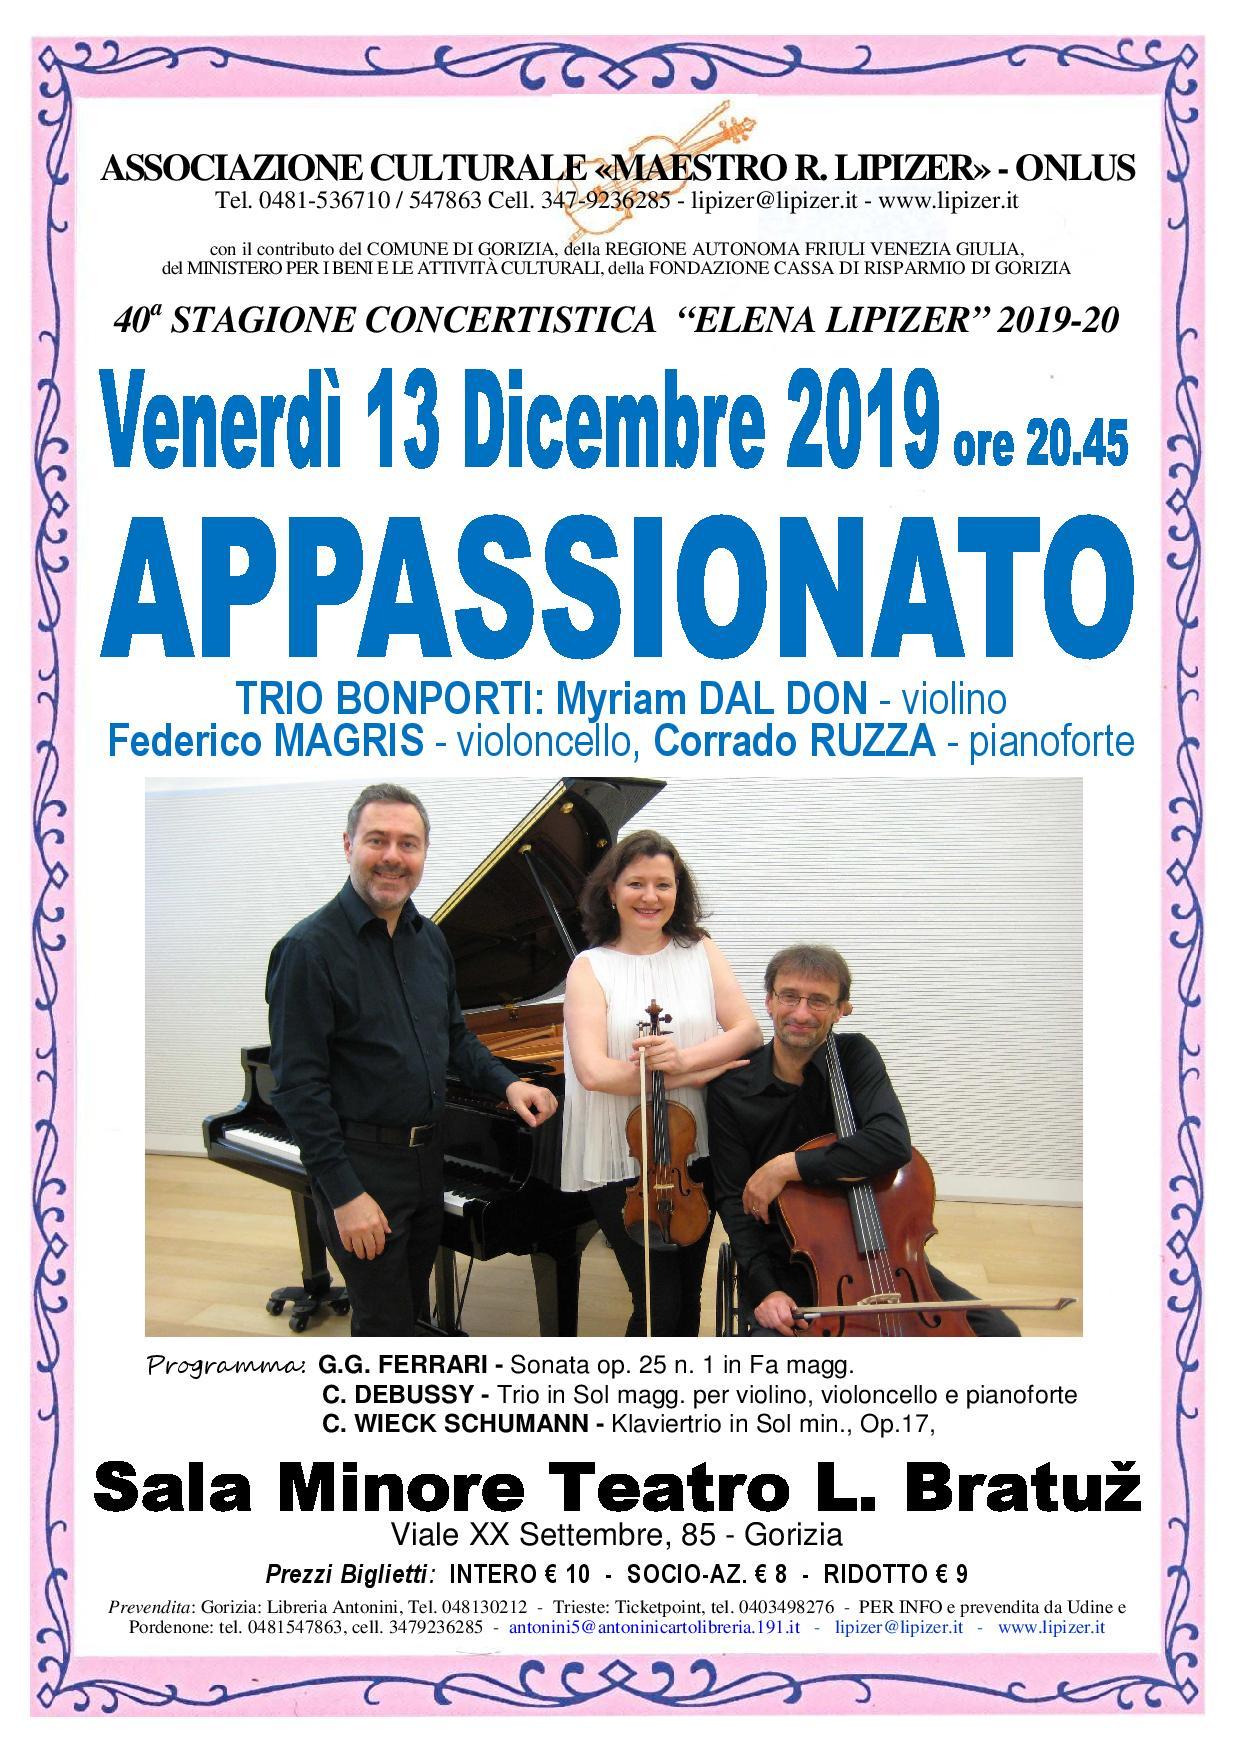 Trio Bonporti